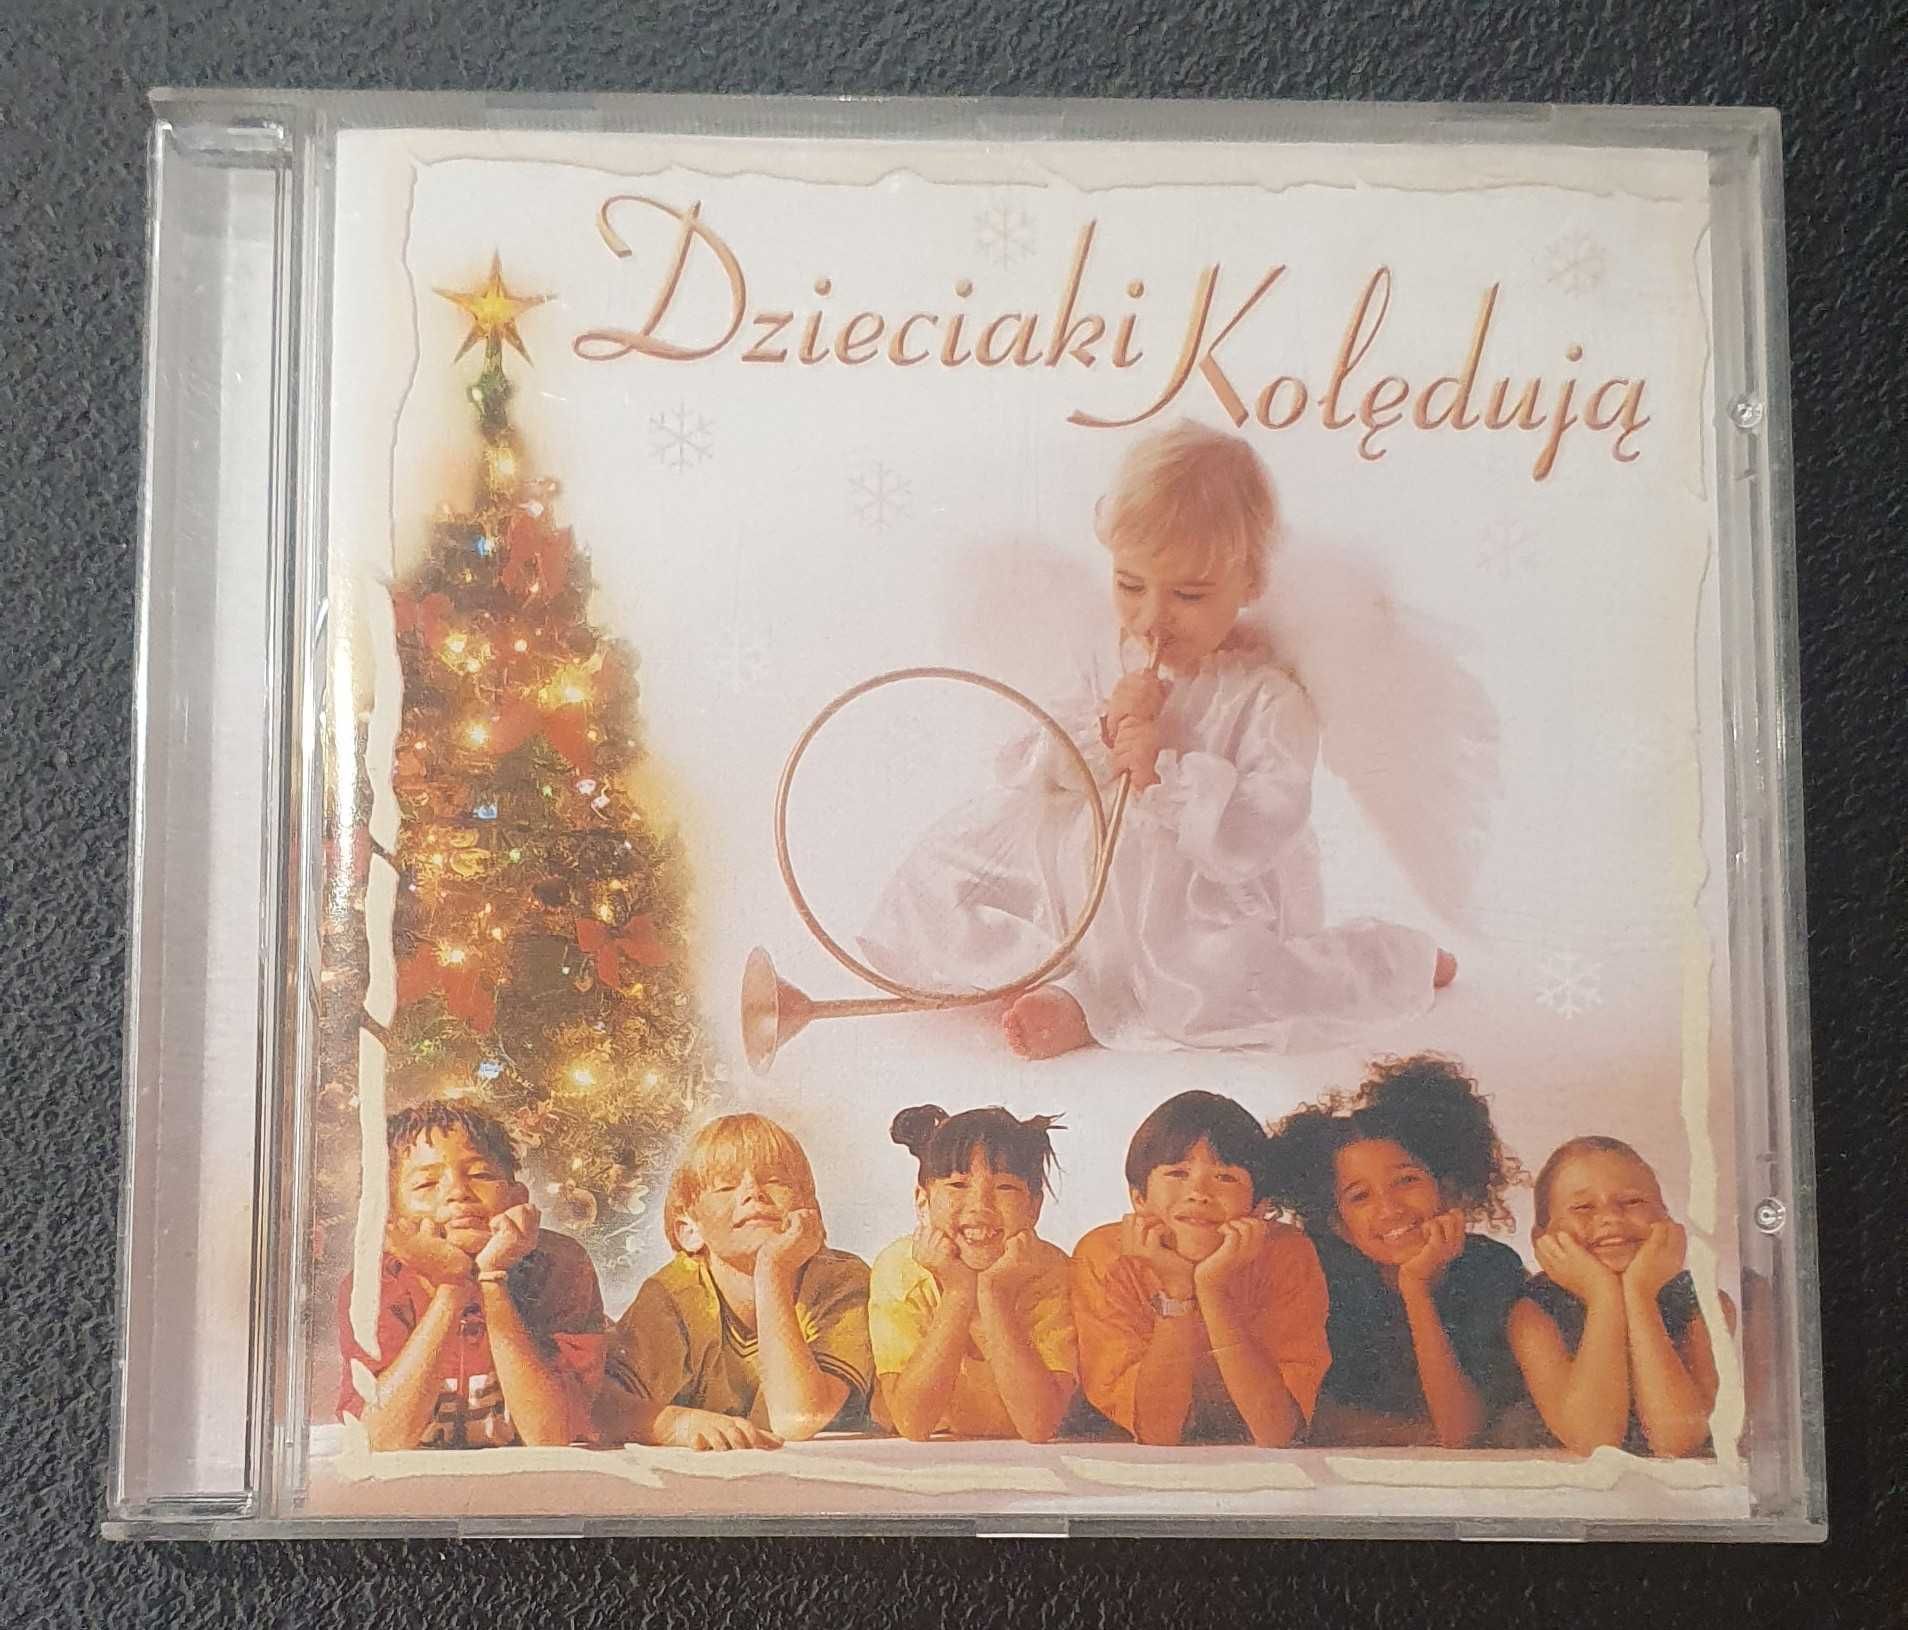 Dzieciaki Kolędują - CD - piosenki świąteczne + wersje instrumentalne